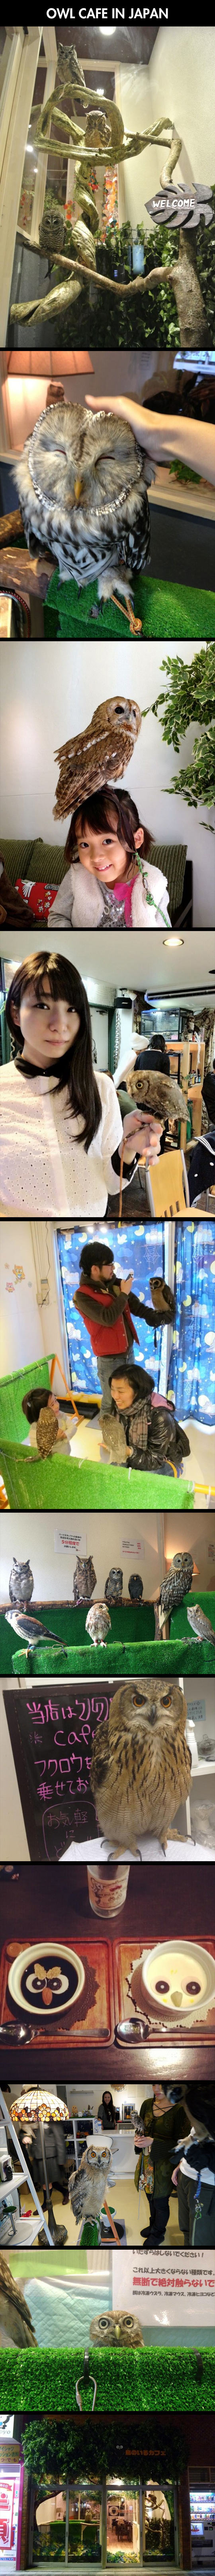 Japanese Owl Cafe